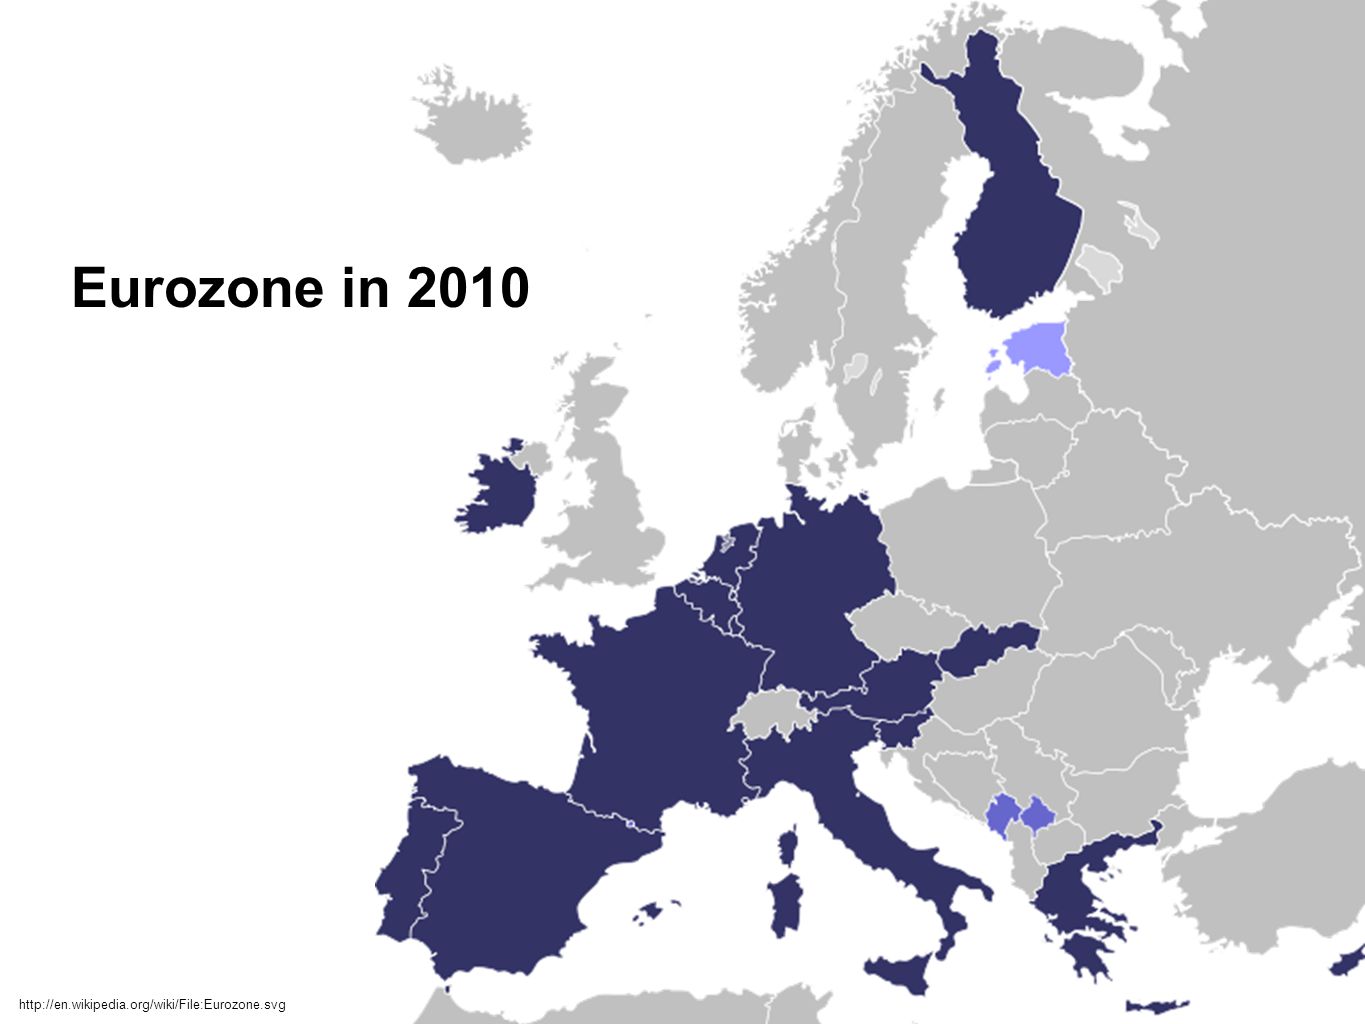 Eurozone in 2010